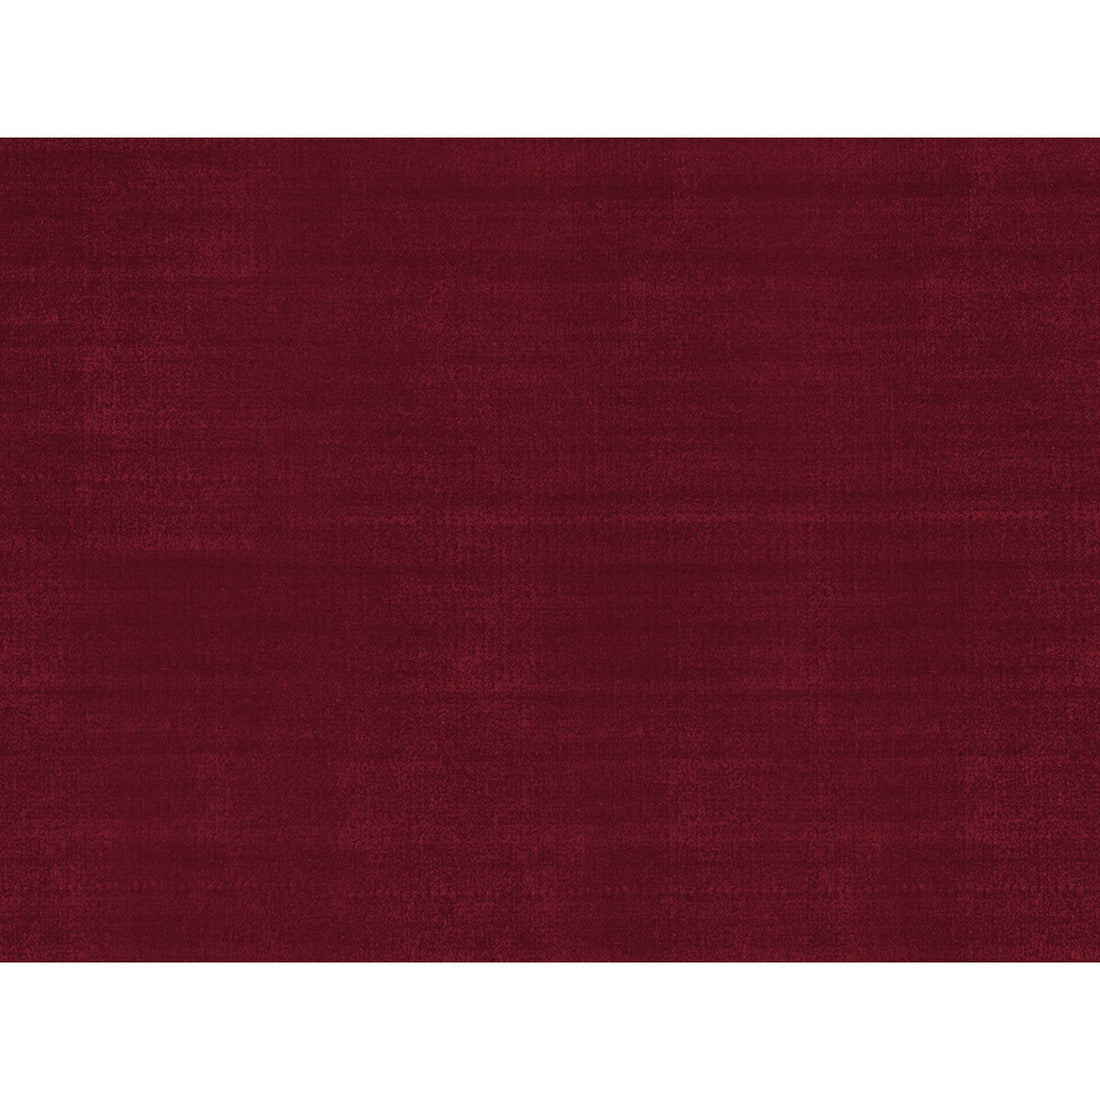 St fabric in florent silk velvet cranberry color - pattern BR-89780.172.0 - by Brunschwig &amp; Fils